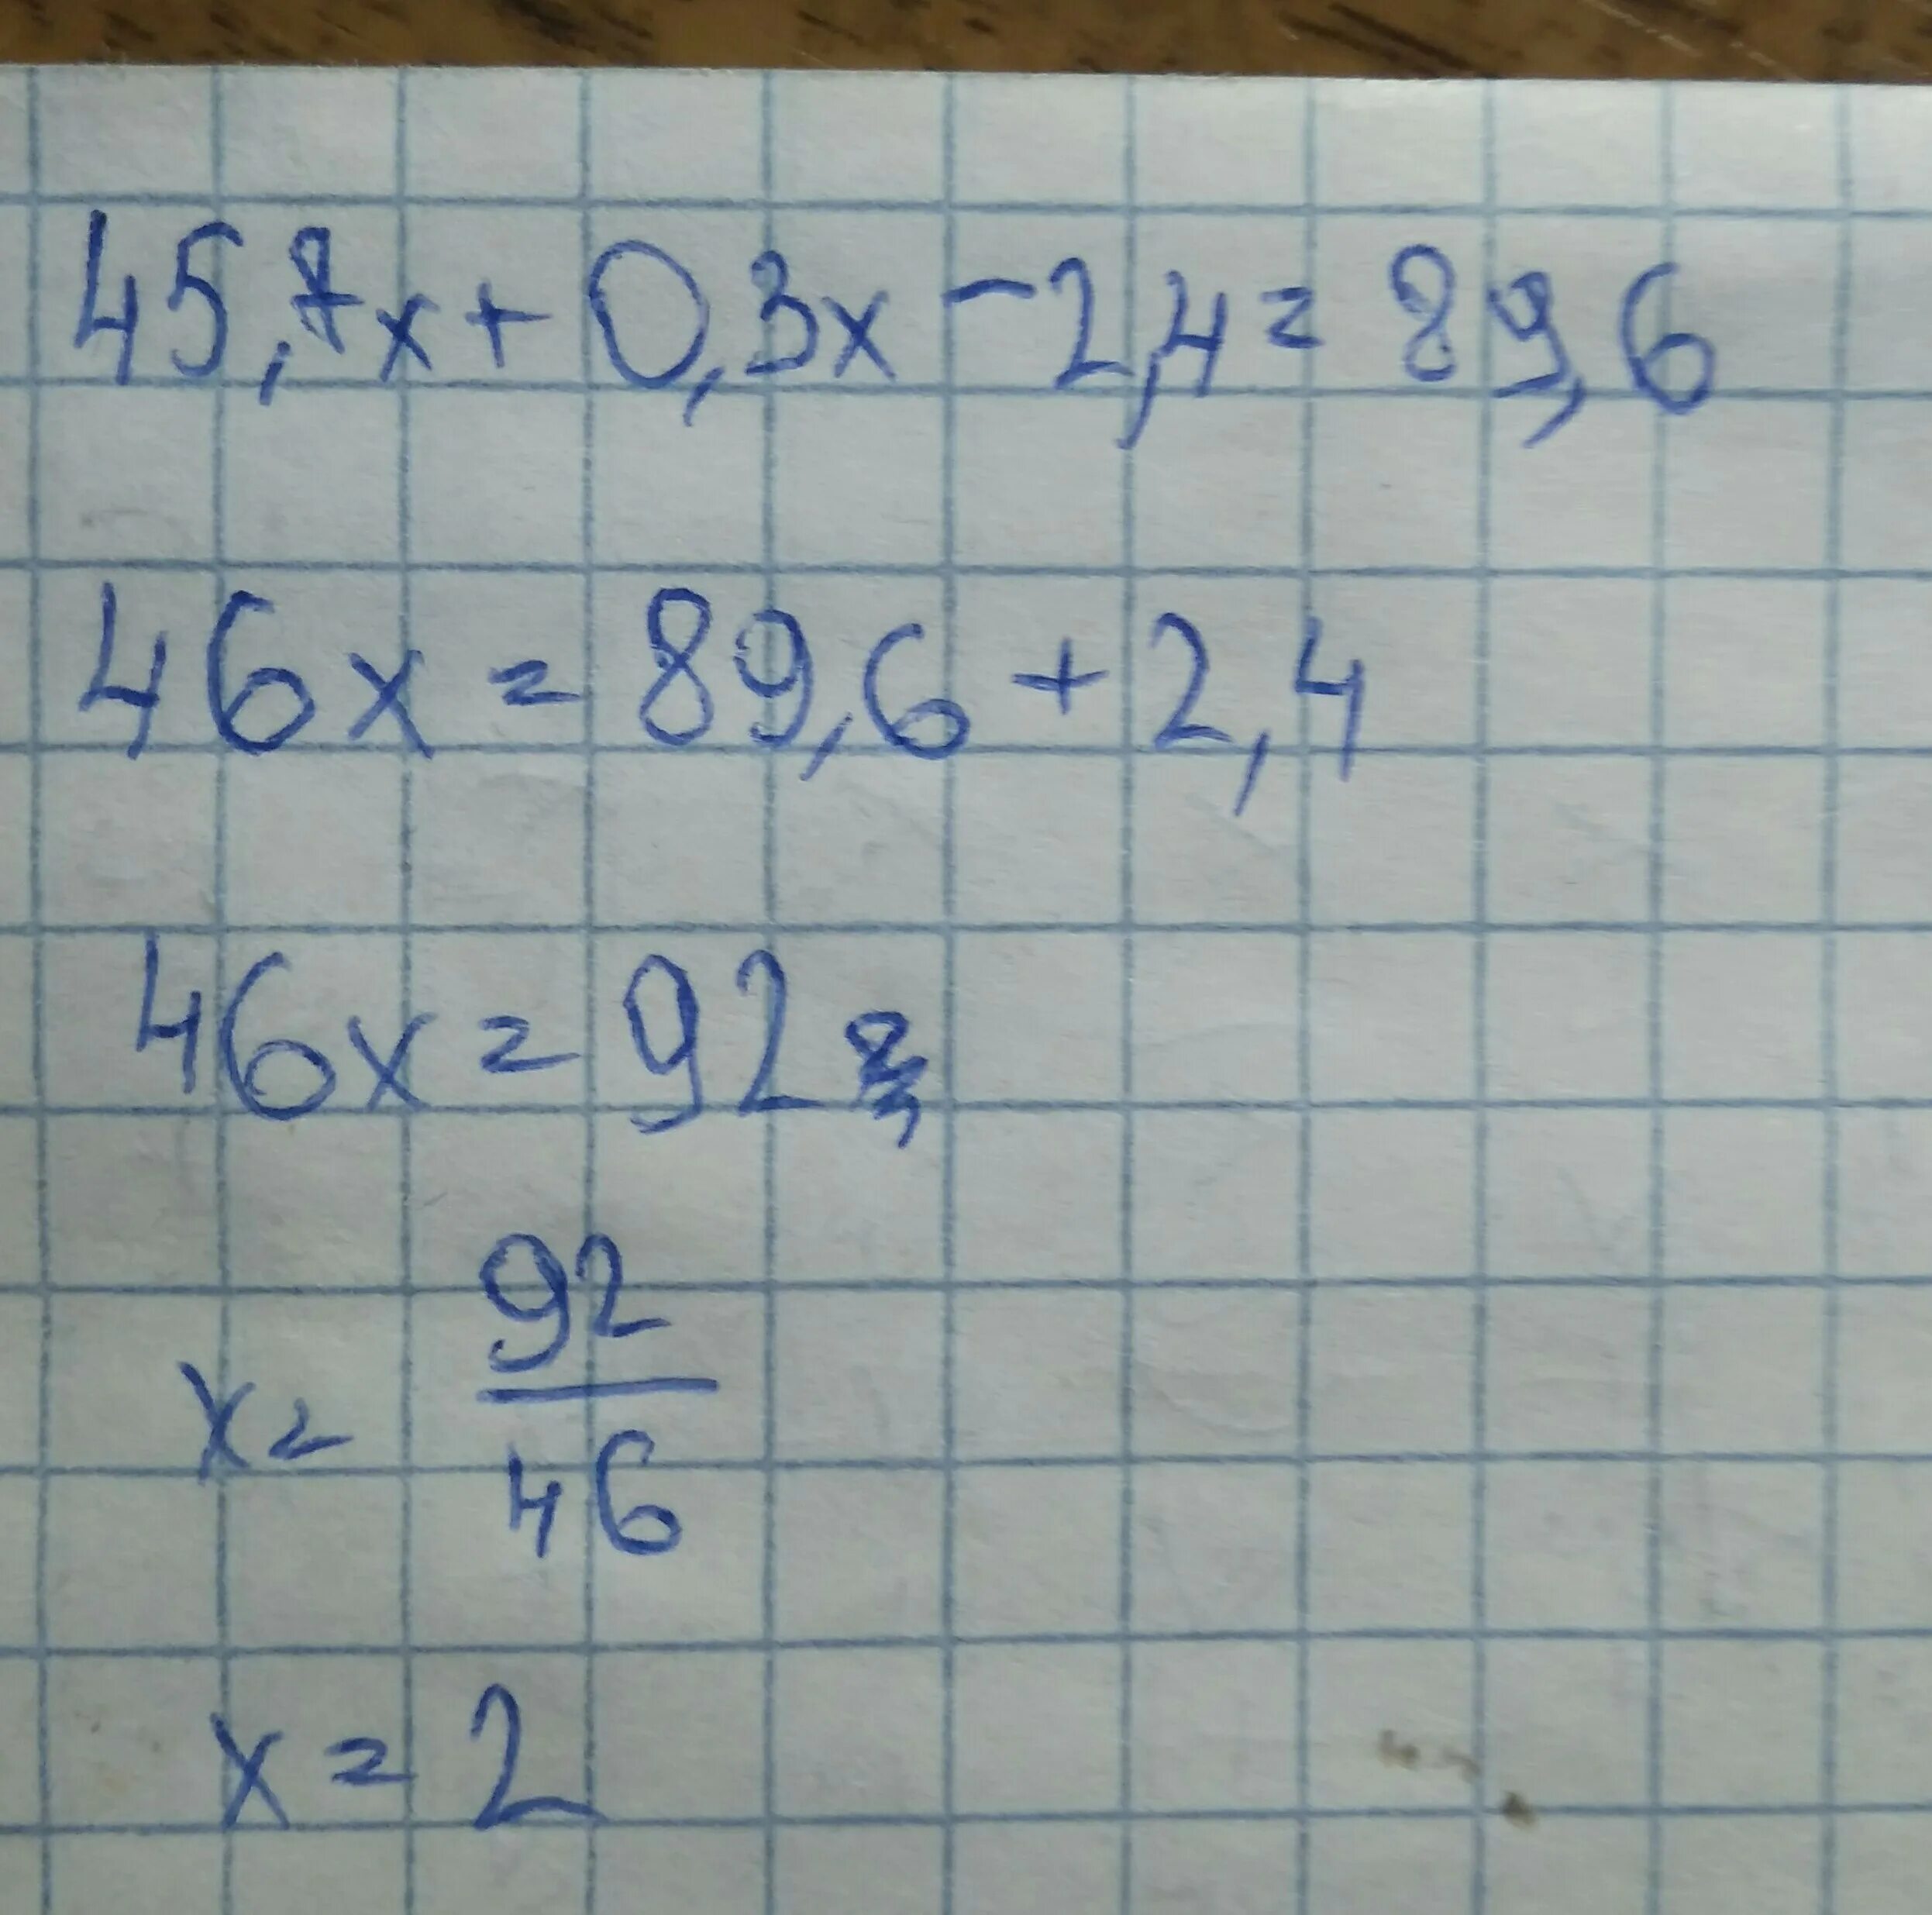 3 x 7 75. 45.7Х+0.3Х-2.4 89.6 решение. Решите уравнение 45.7х+0.3х-2.4 89.6. 45 7х+0.3-2.4 89.6. 45 7х 0 3х-2 4 89 6.